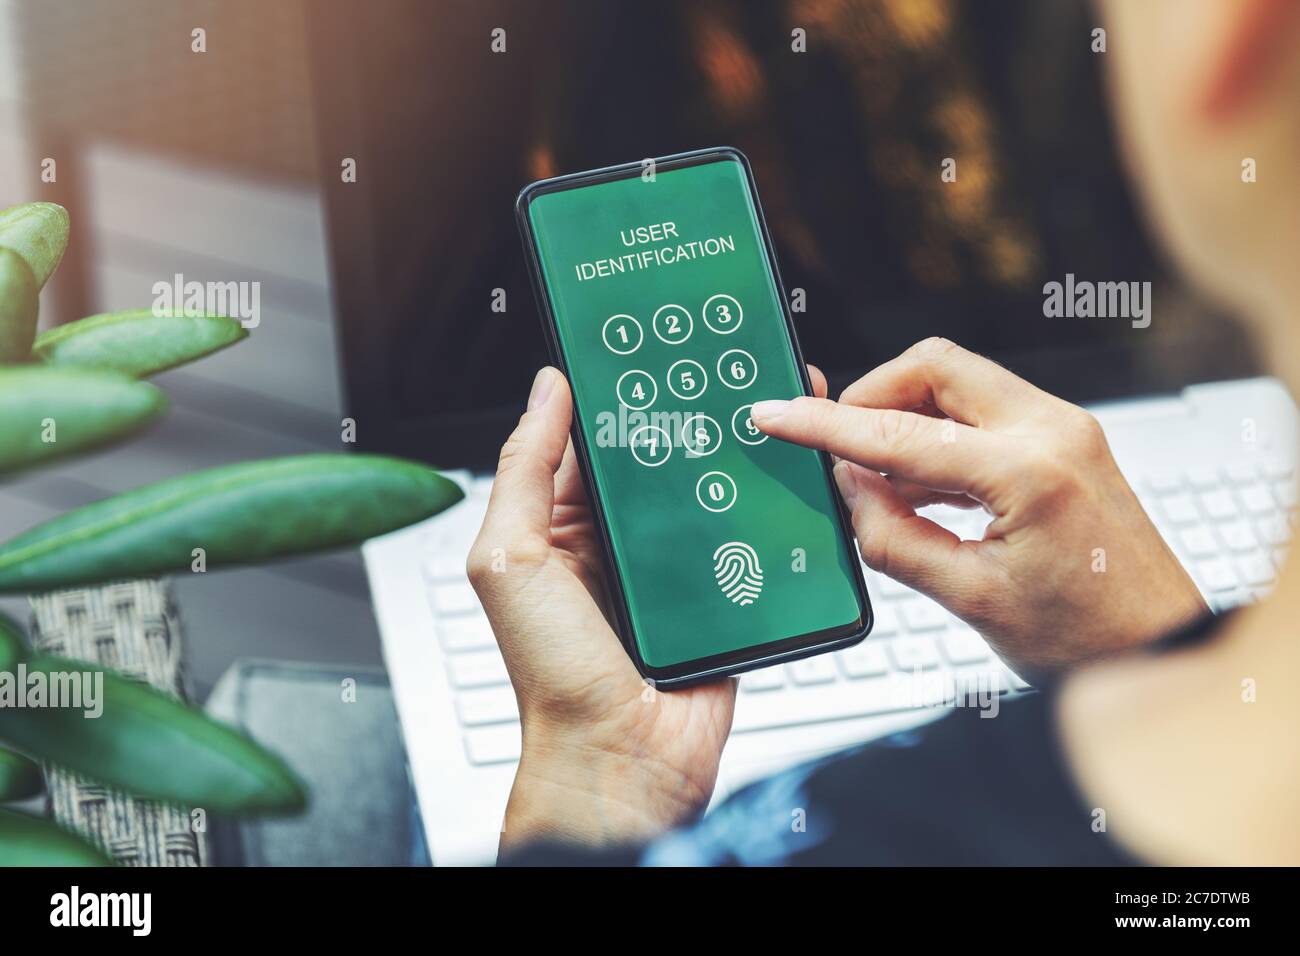 Cyber Security - Frau mit mobilen Anwendung im Smartphone für Internet-Banking-Benutzer Authentifizierung Stockfoto